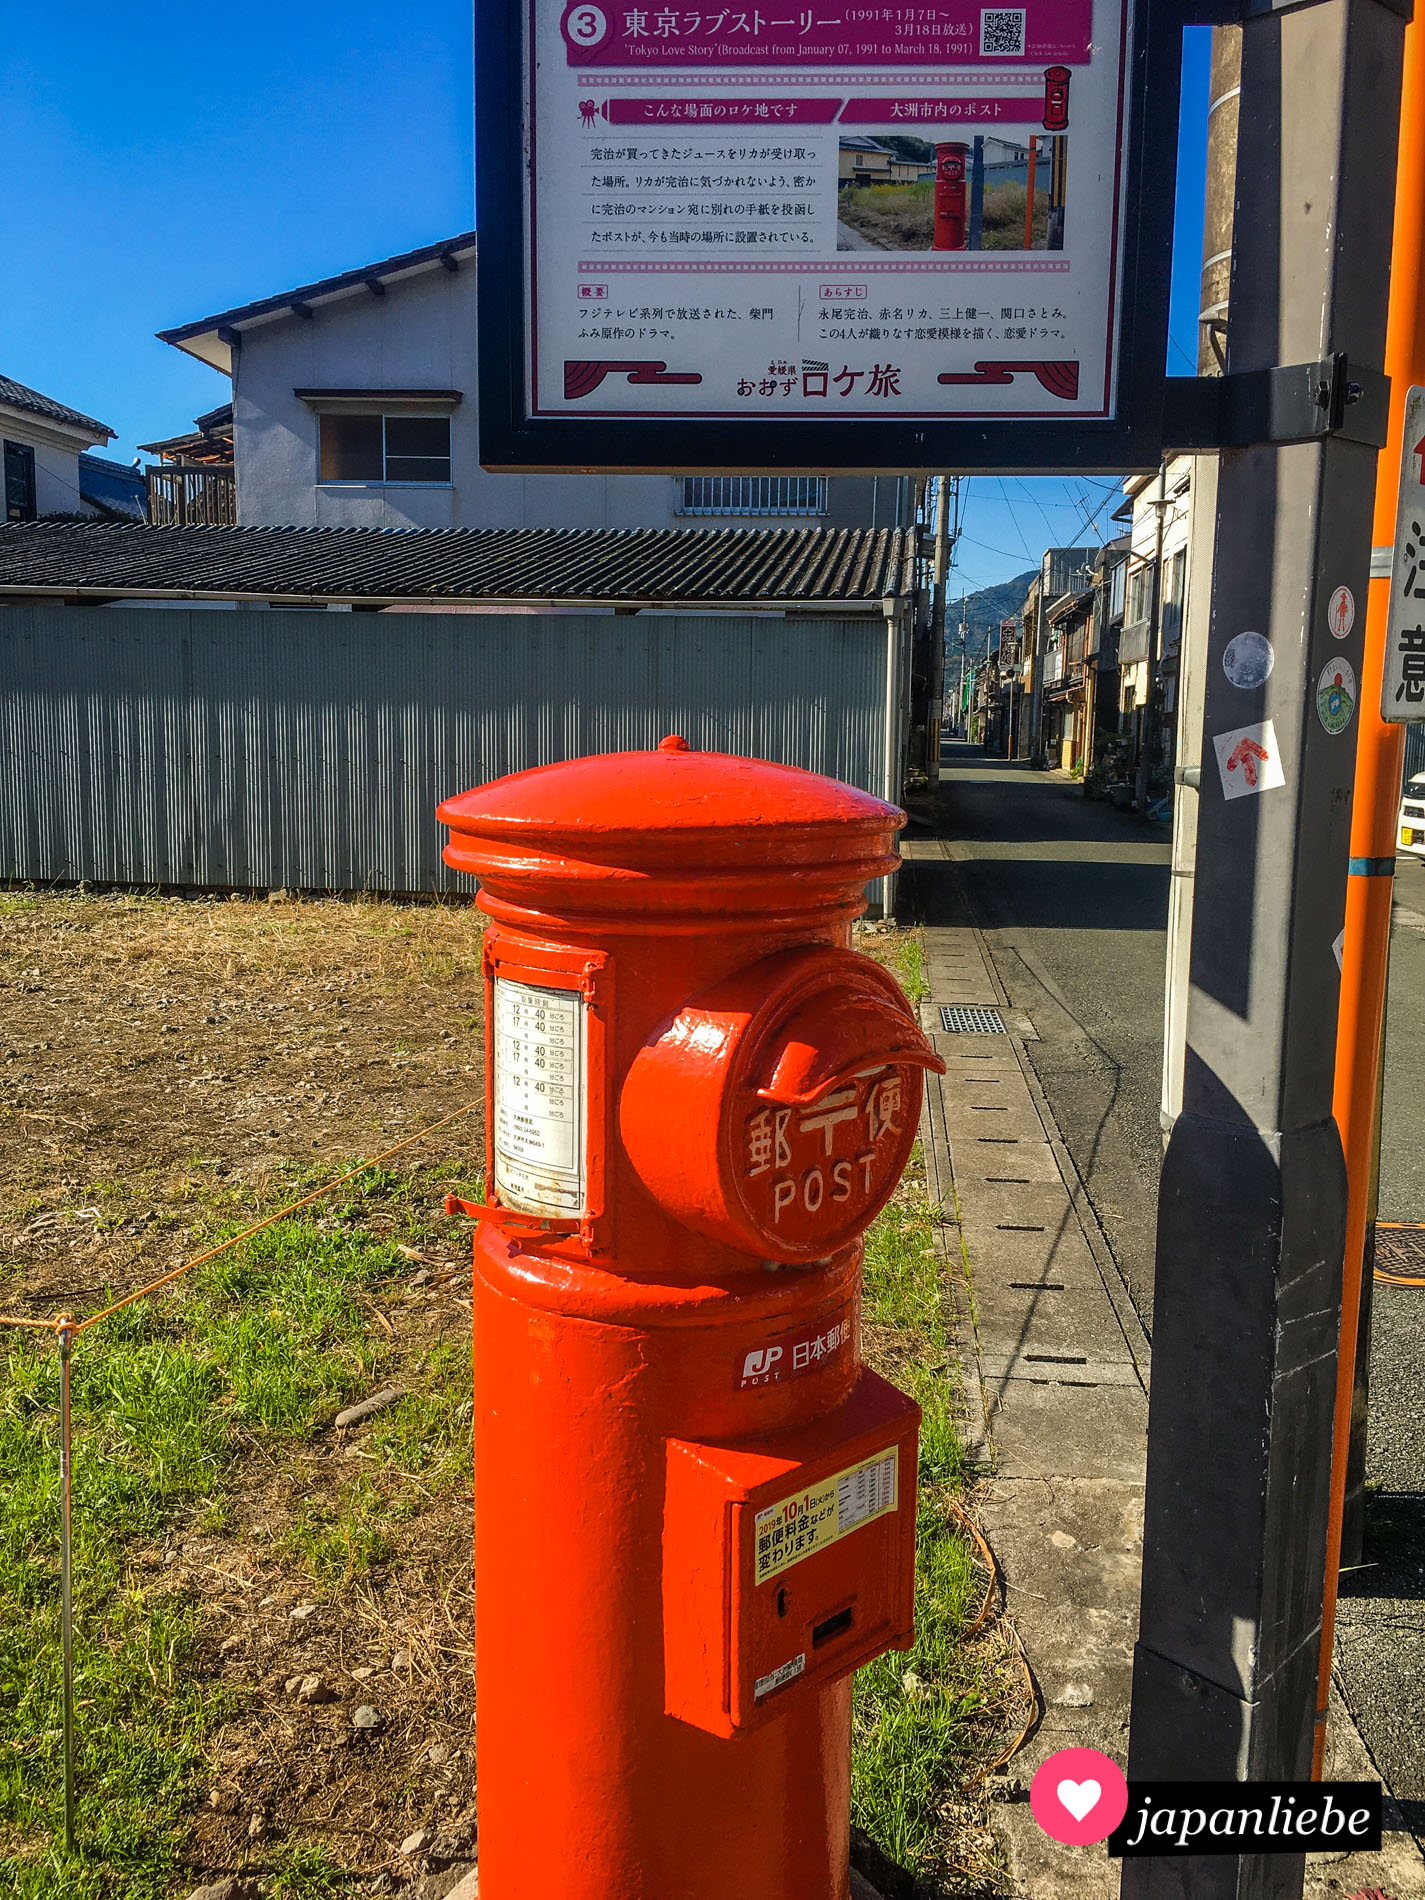 Dieser Postkasten in der Stadt Ozu auf Shikoku erlangte Berühmtheit durch das TV Drama „Tokyo Love Story“.